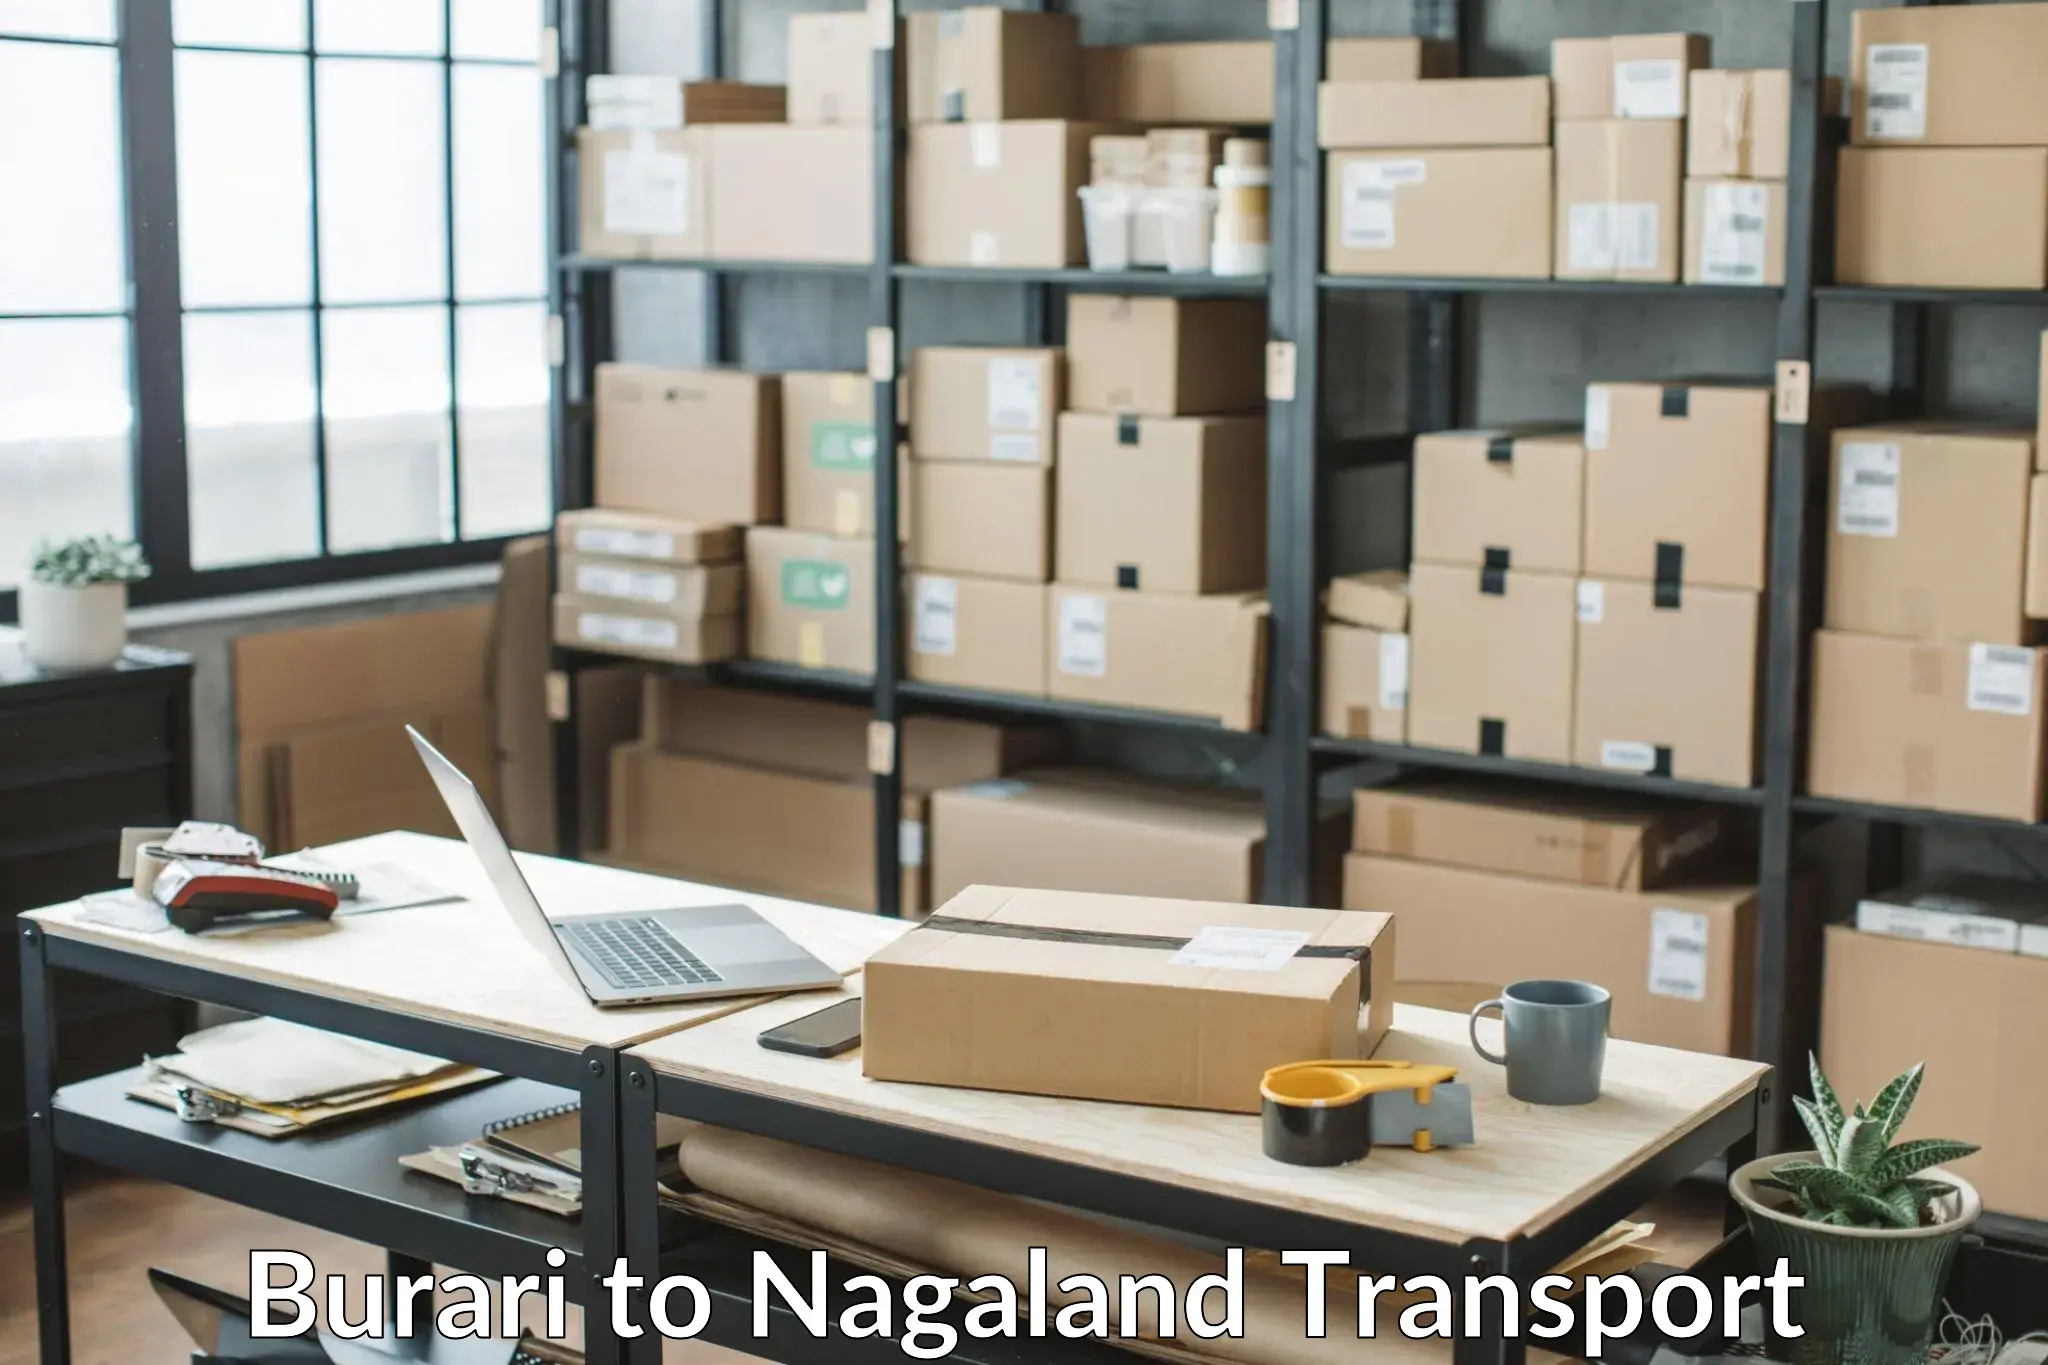 Cycle transportation service Burari to NIT Nagaland